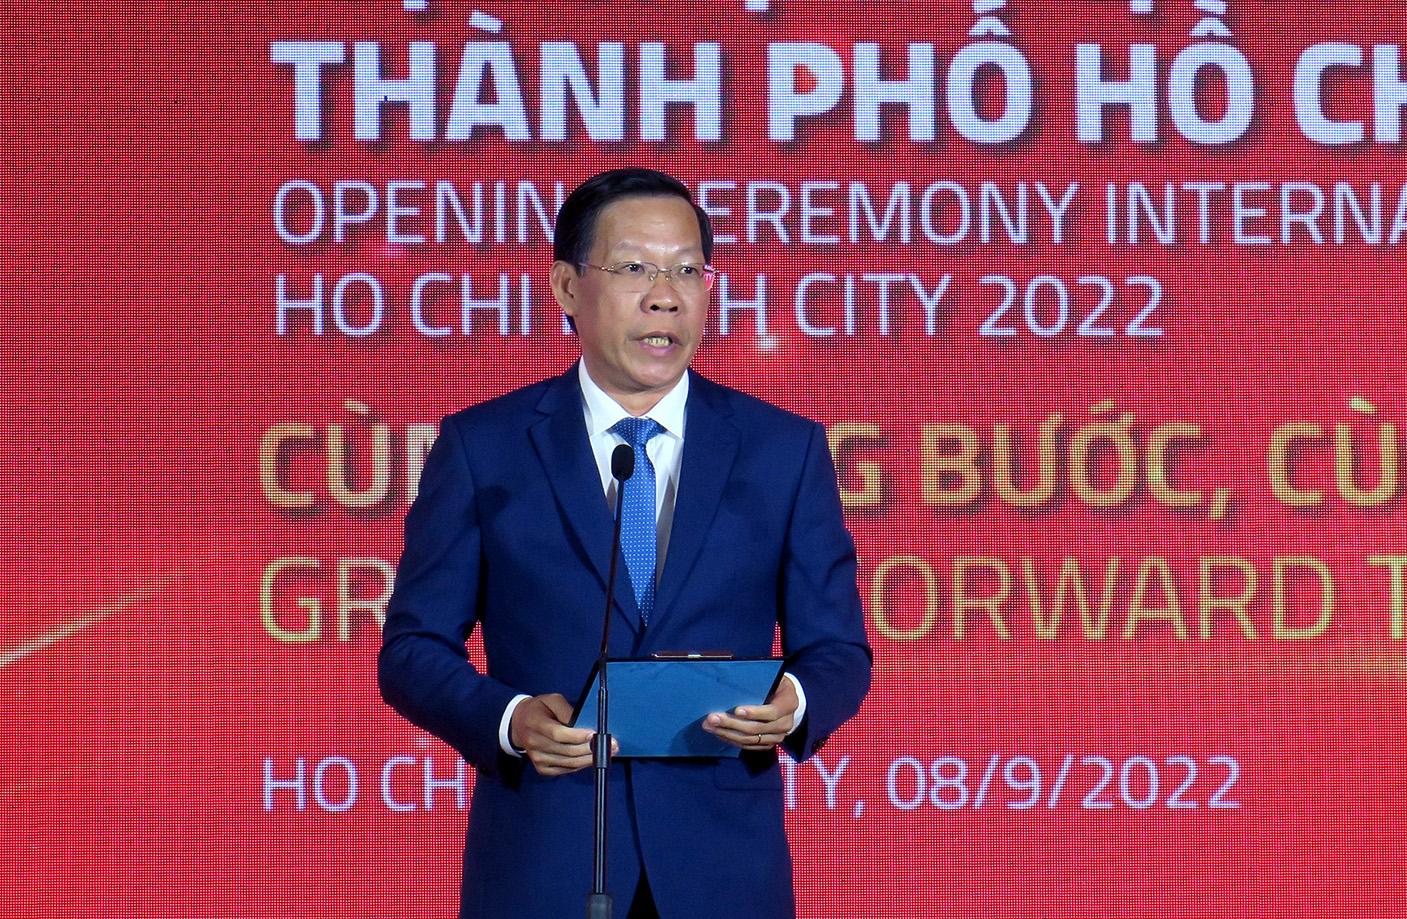 Đồng chí Phan Văn Mãi - Chủ tịch UBND TP. Hồ Chí Minh phát biểu tại lễ khai mạc Hội chợ ITE HCMC 2022.